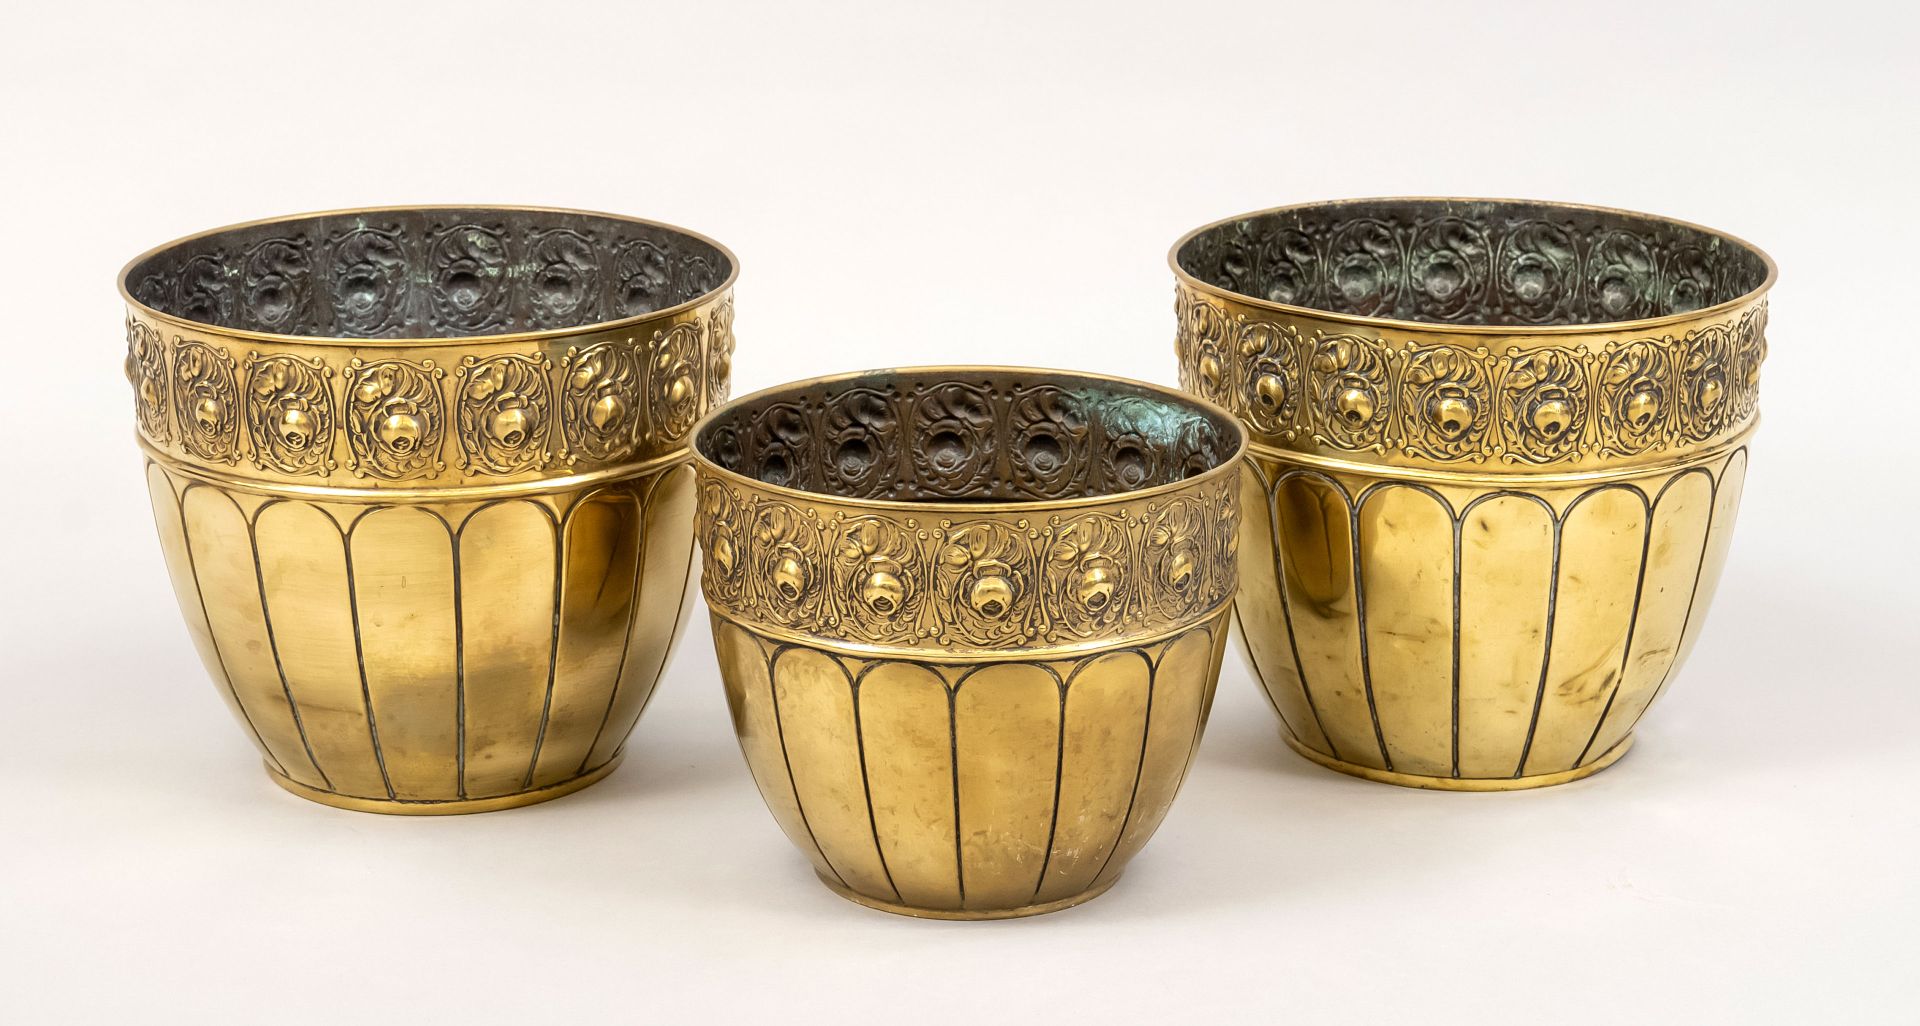 Null 3个储物罐，20世纪中期，黄铜。周围的浮雕装饰，高至21厘米。